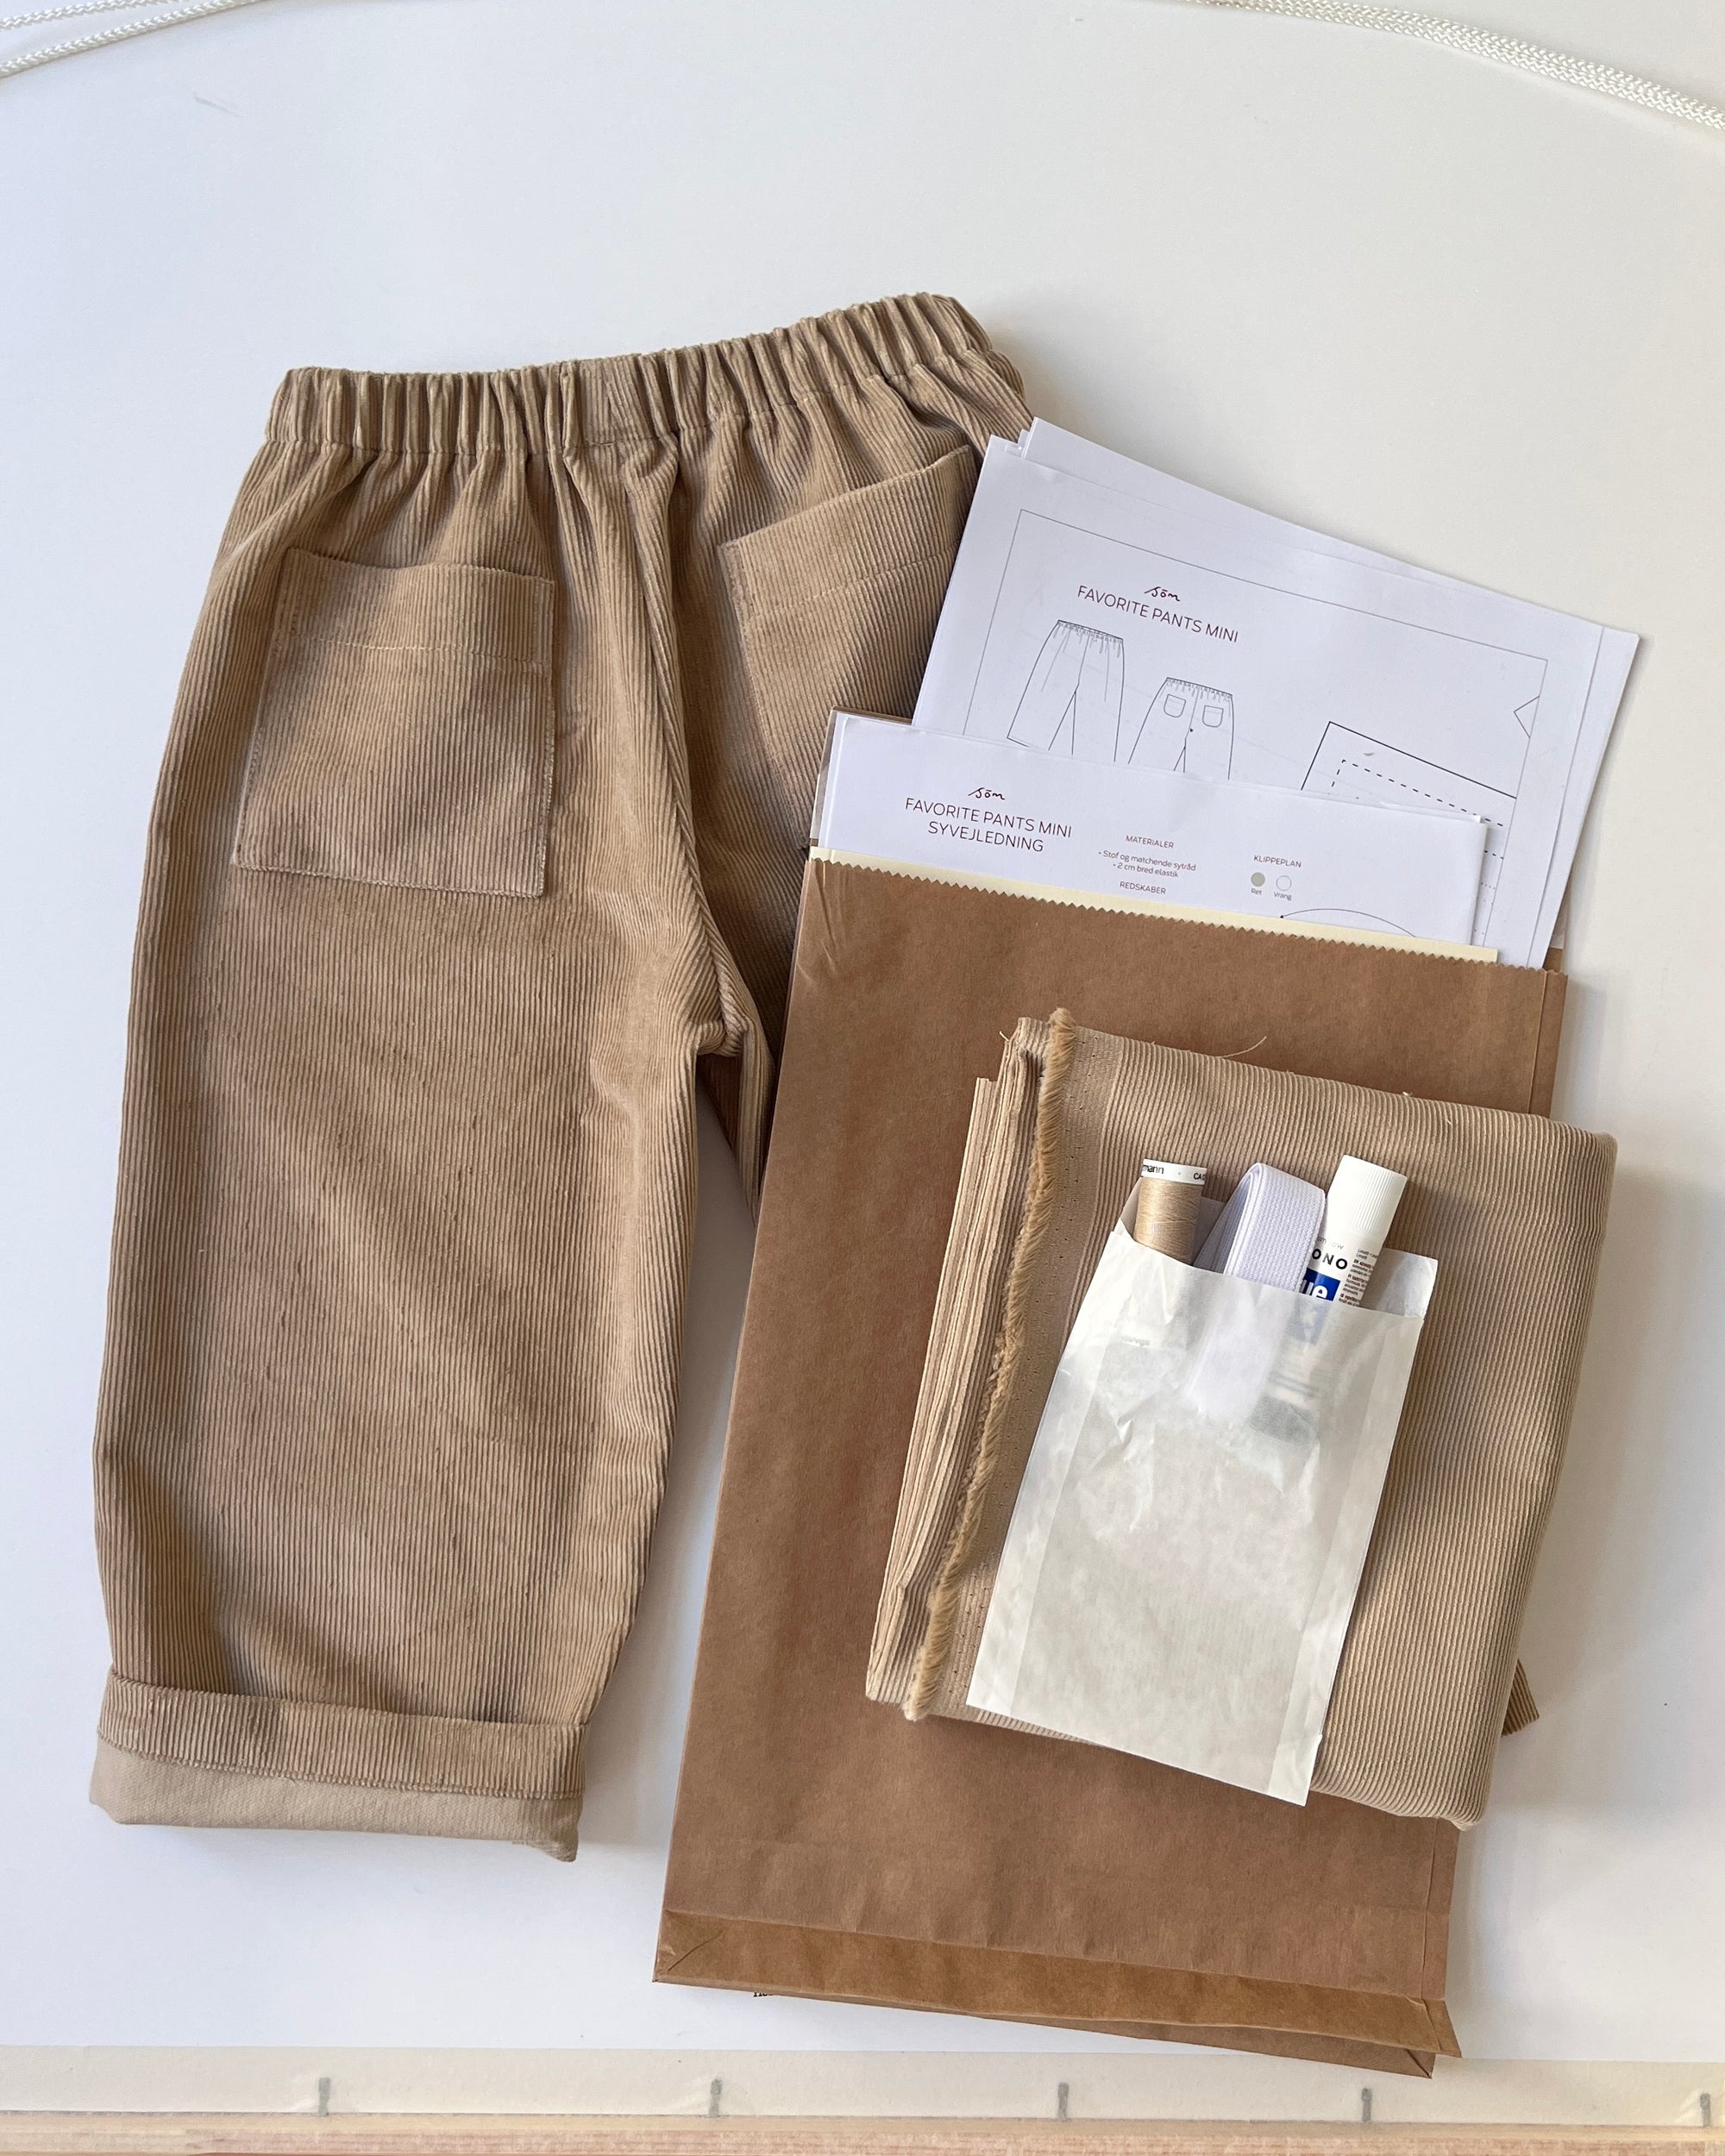 Favorite Pants Mini Sewing Kit: Cotton Corduroy Sand Dune+Printed Pattern(DK)+Supplies